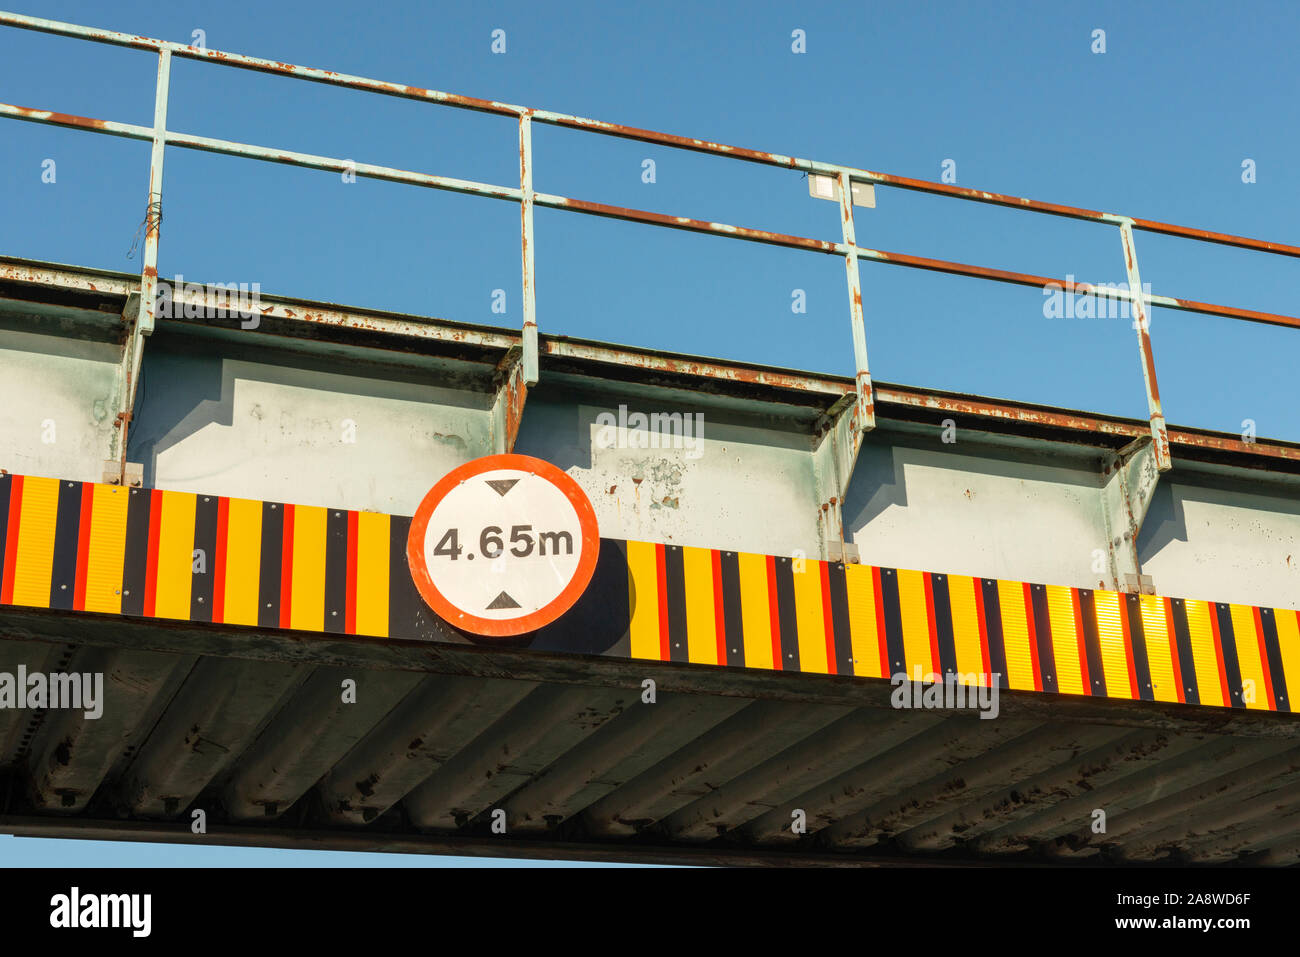 Señal de advertencia de 4,65 m de espacio libre para la altura del puente ferroviario Foto de stock